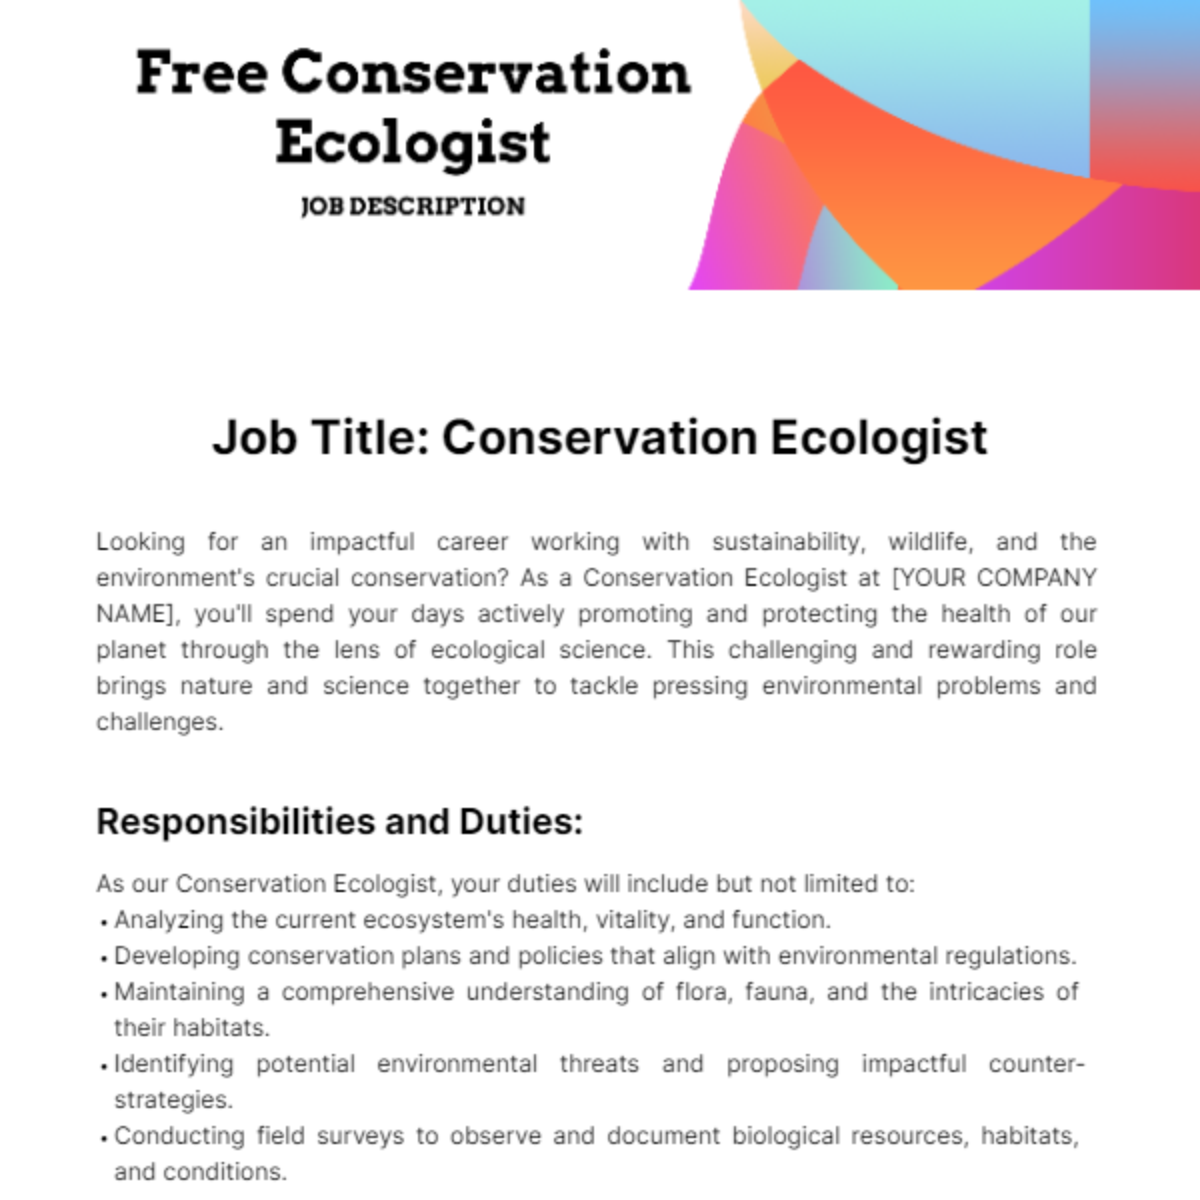 Free Conservation Ecologist Job Description Template